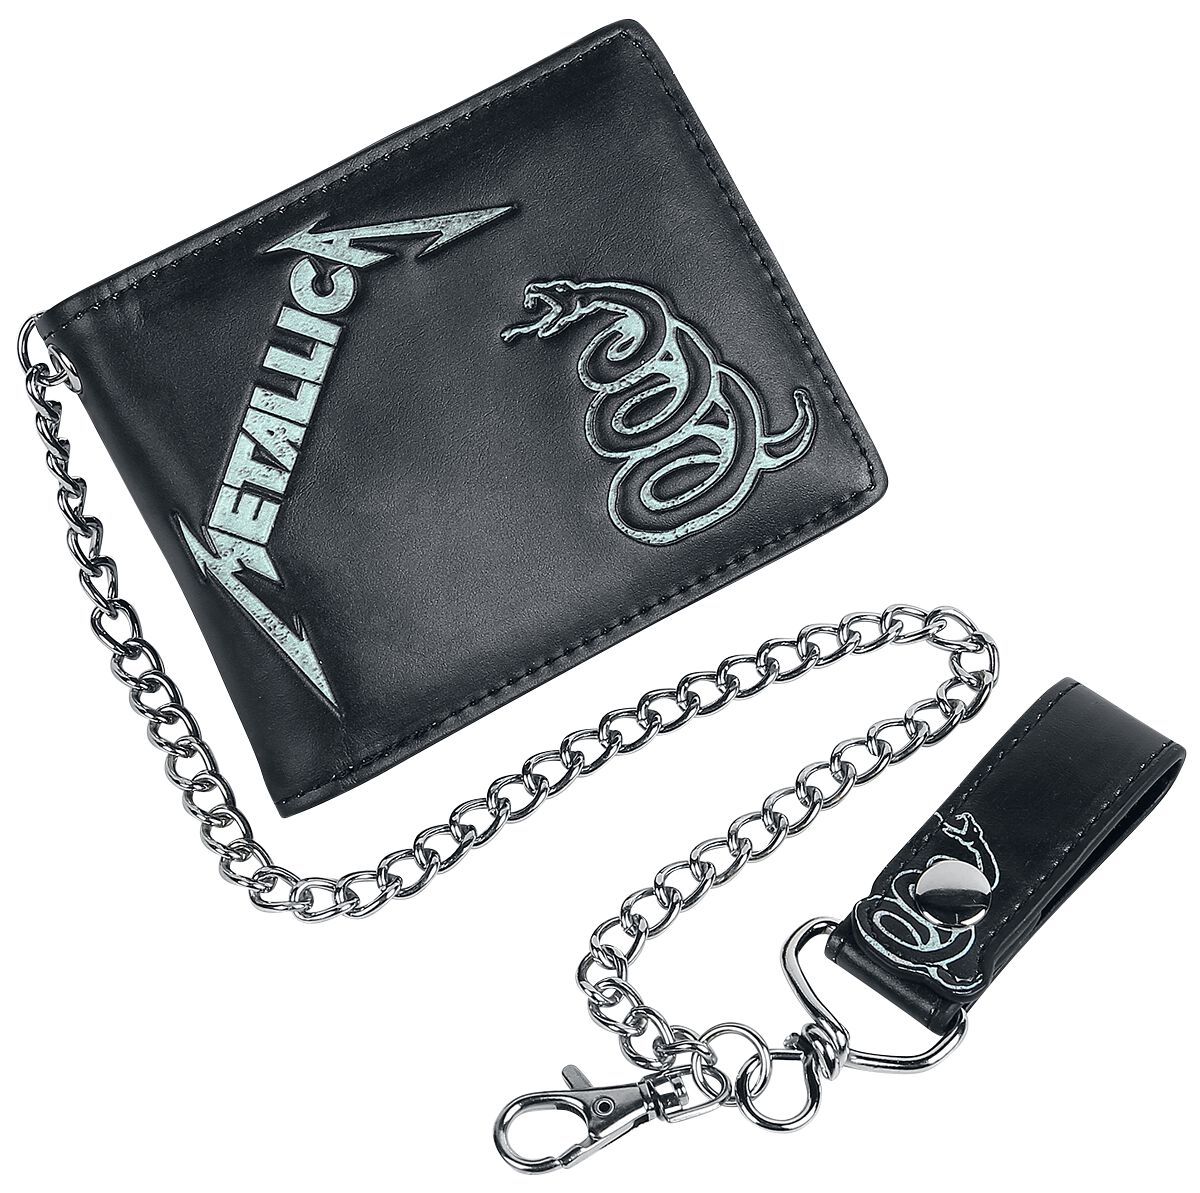 Metallica Geldbörse - Black album - für Männer   - Lizenziertes Merchandise!